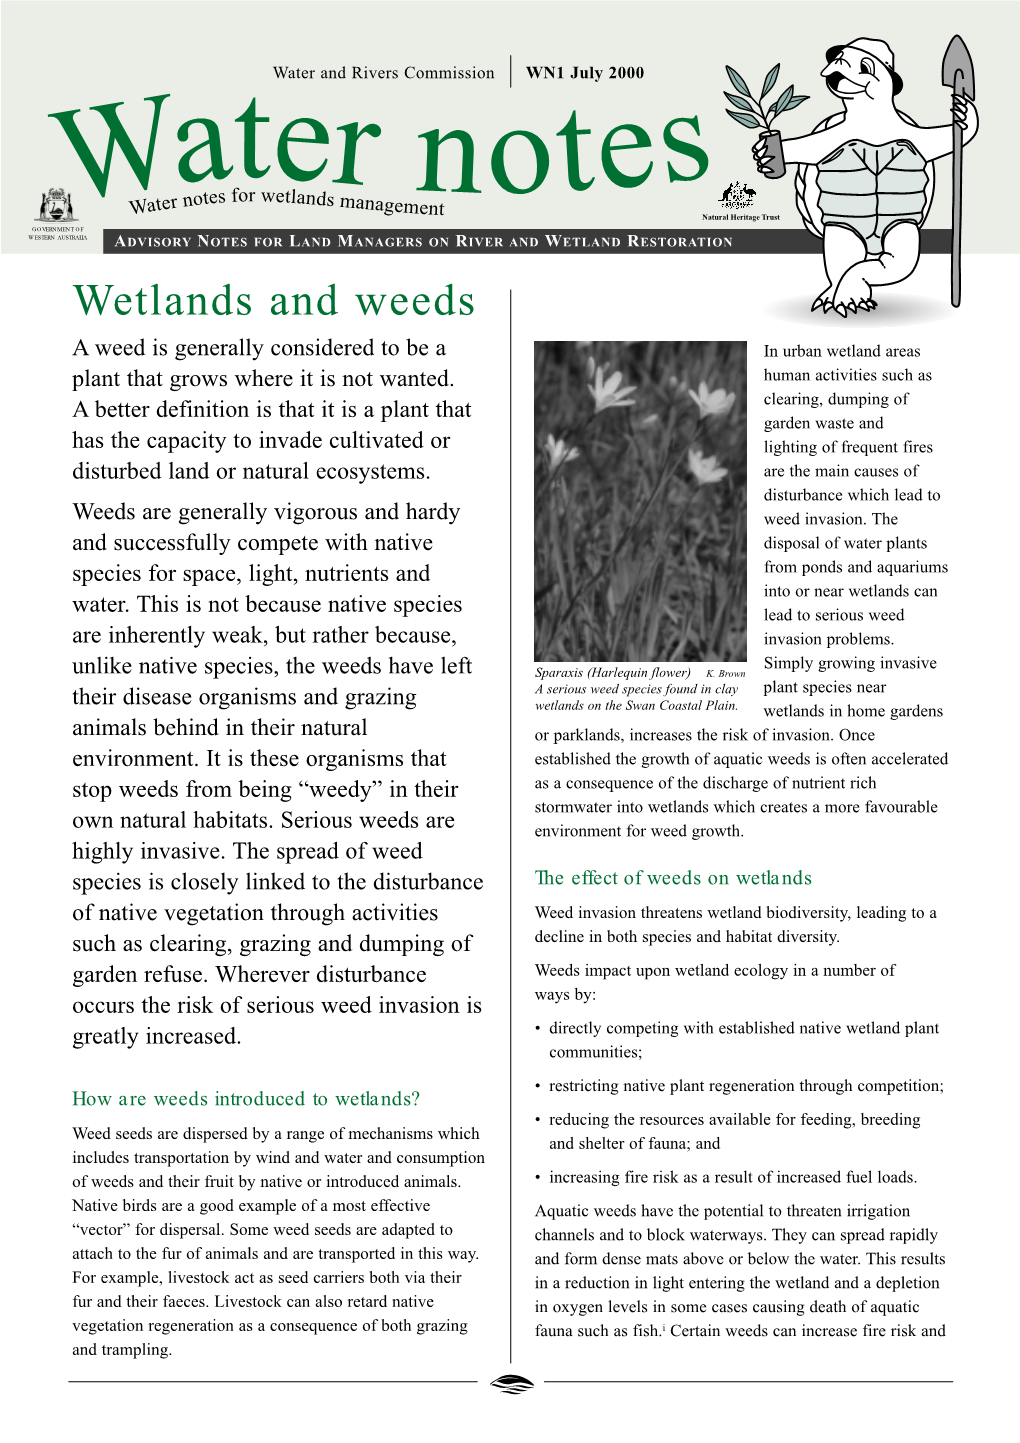 Wetlands and Weeds